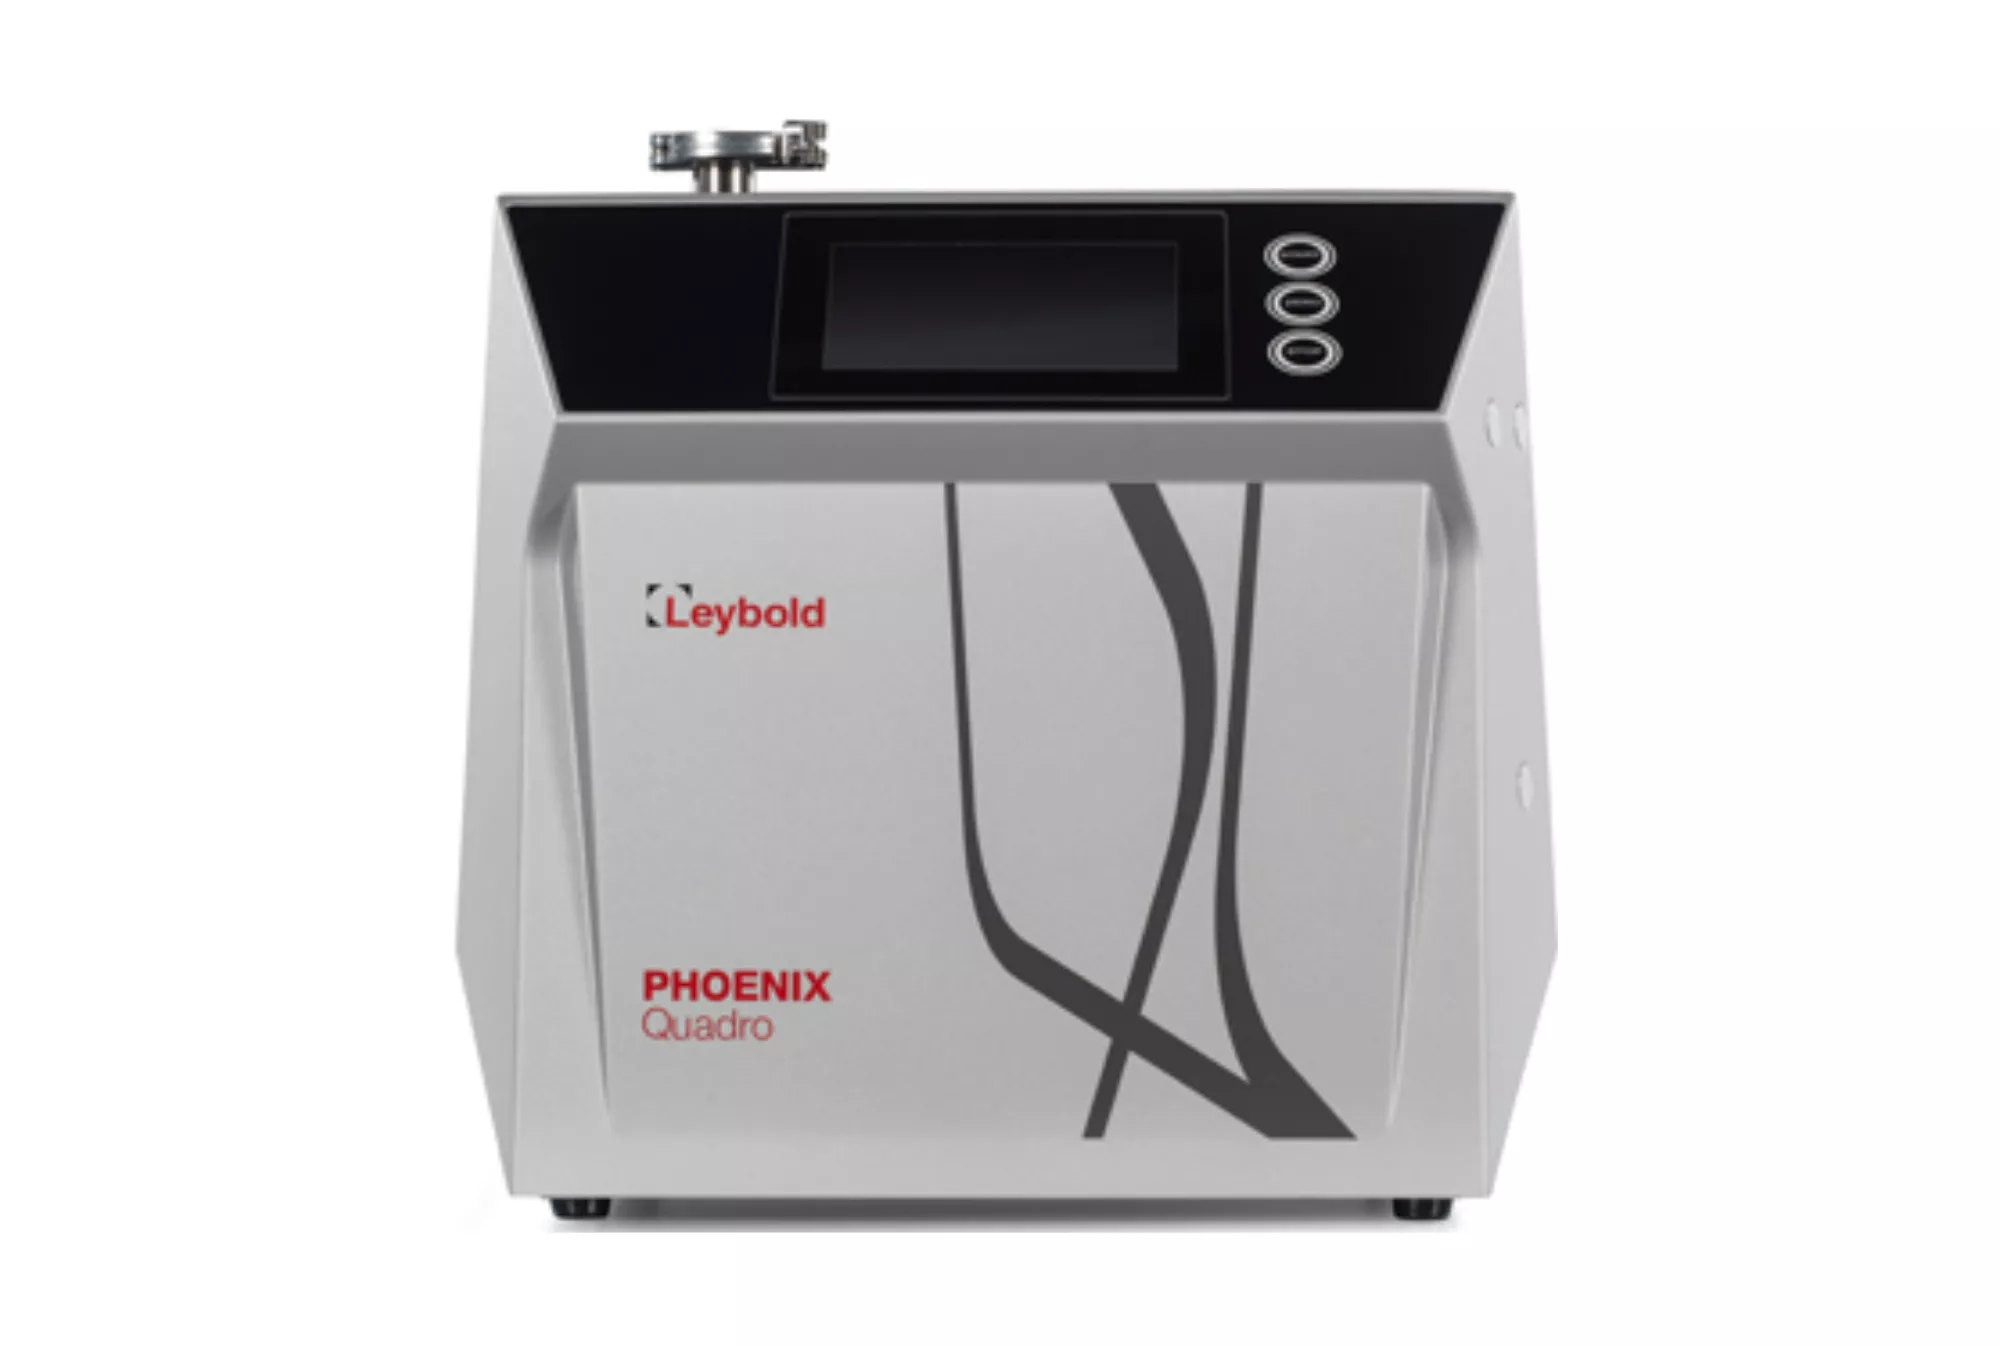 Течеискатель вакуумный PHOENIX Quadro Leybold ✓ купить в каталоге АО Вакууммаш ✦ по цене производителя